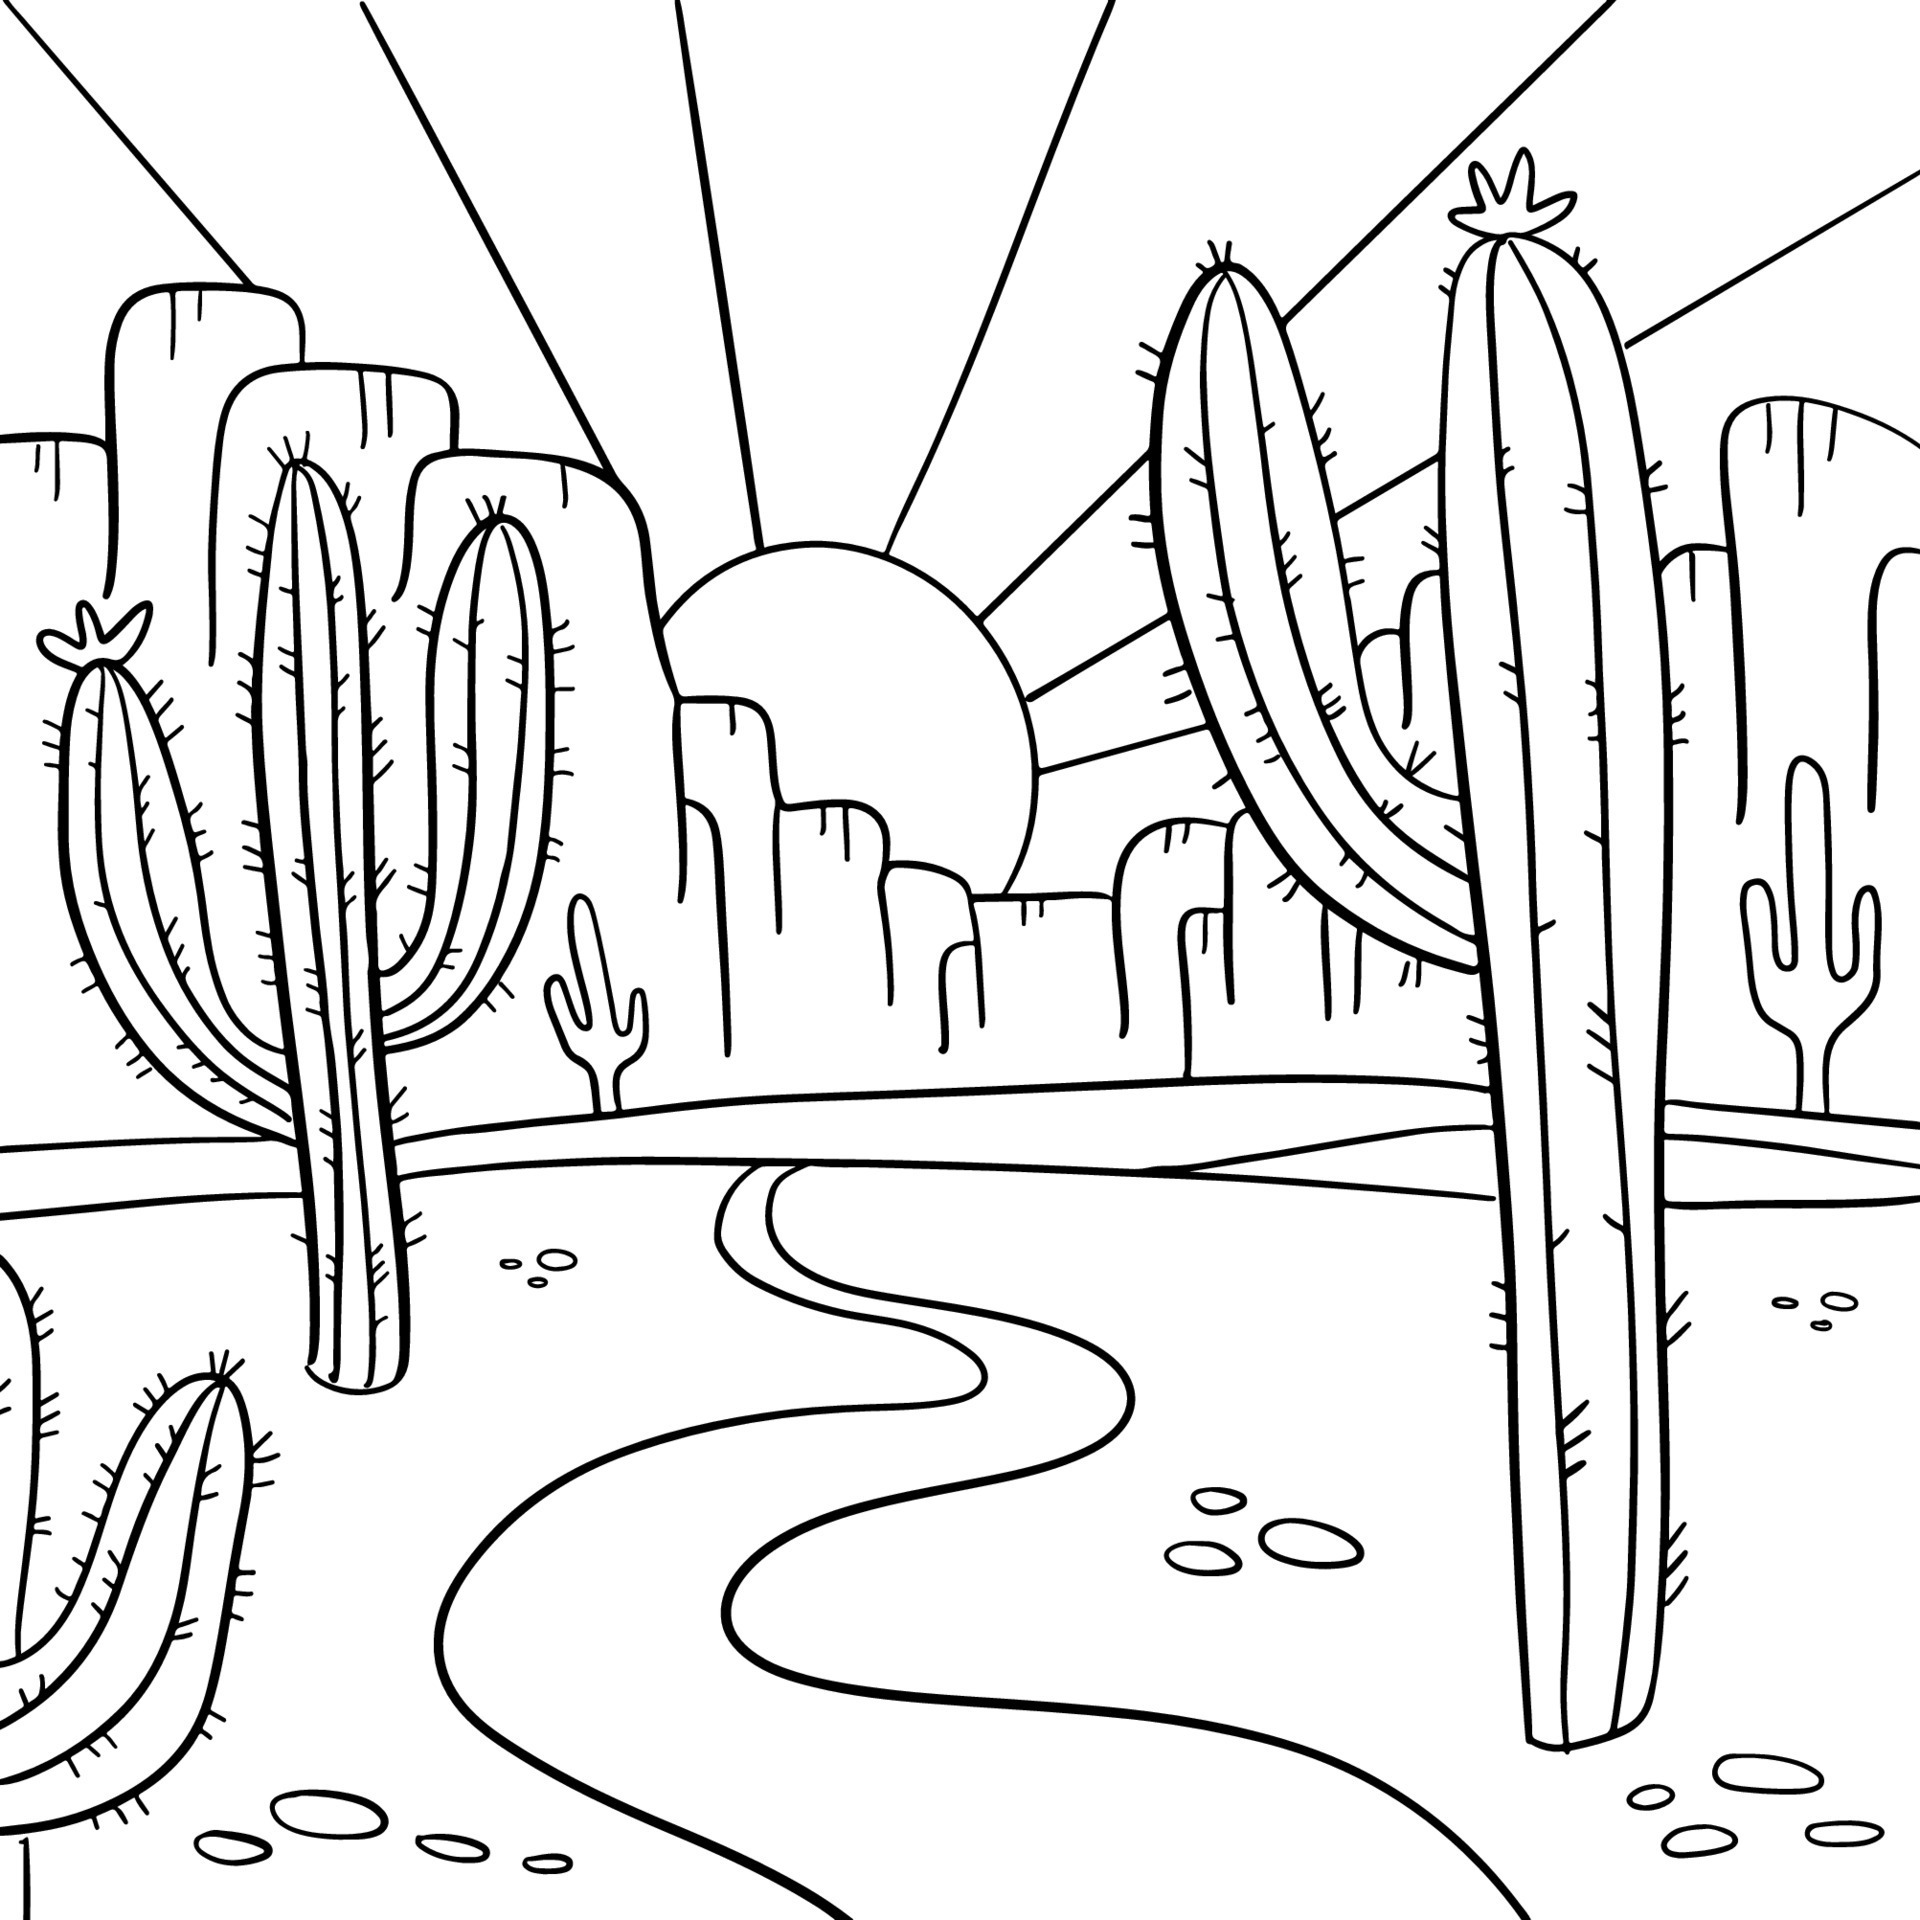 Vetores de Página De Colorir Com Paisagem Do Deserto Do Arizona Desenhado À  Mão Em Preto E Branco Linha Deserto Com Saguaro E Cactos De Opuntia  Florescendo Em Frente Às Montanhas E